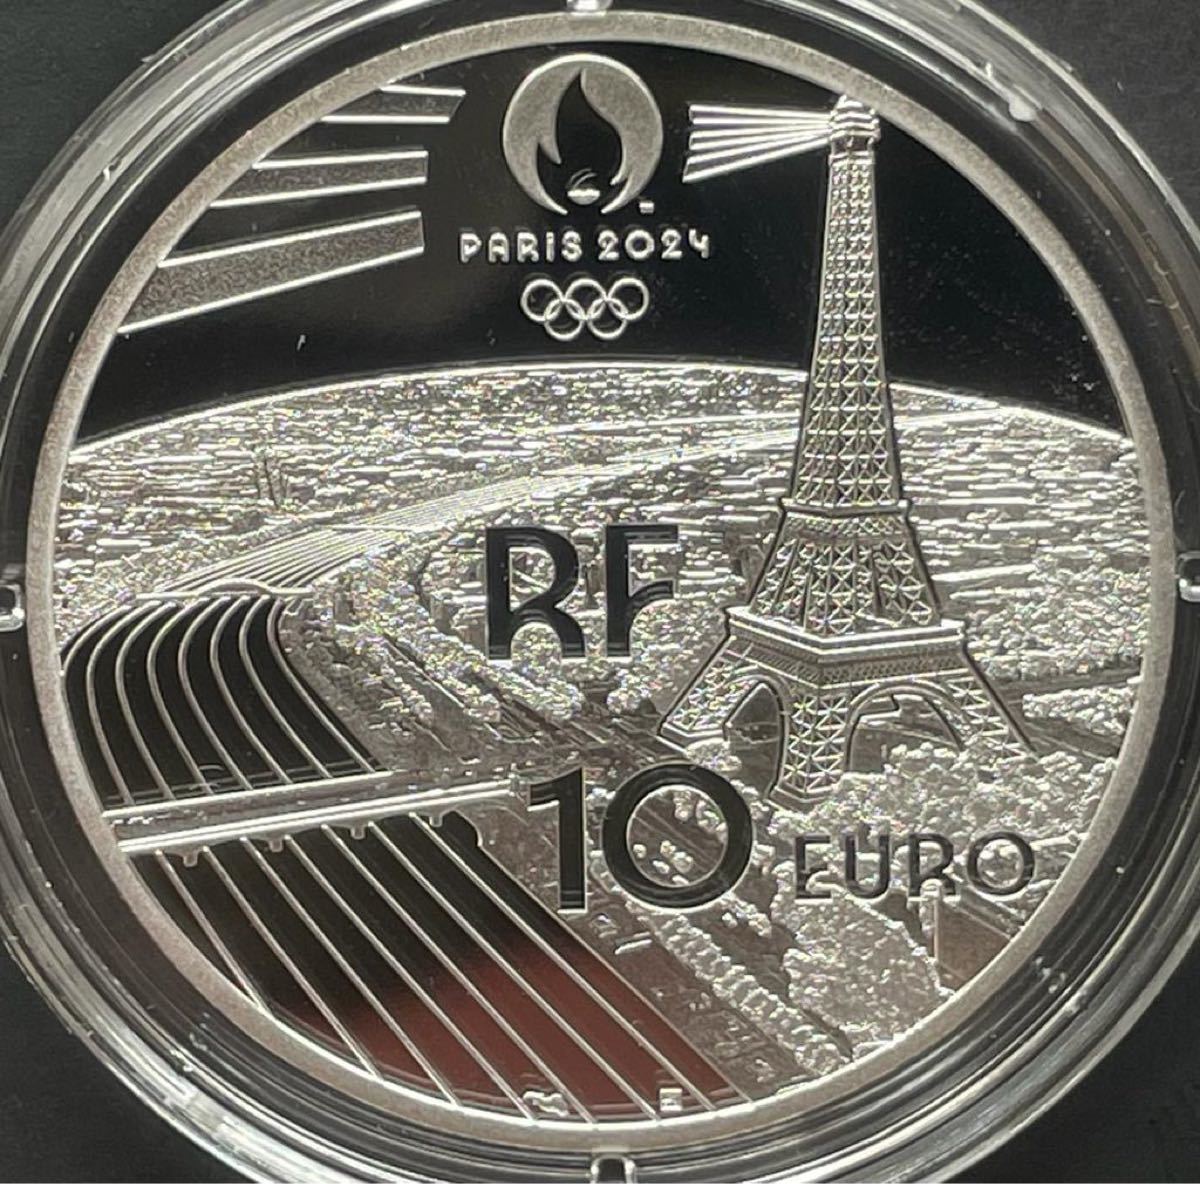 2021 フランス パリ2024 パラリンピック開催記念 10ユーロ プルーフ ...